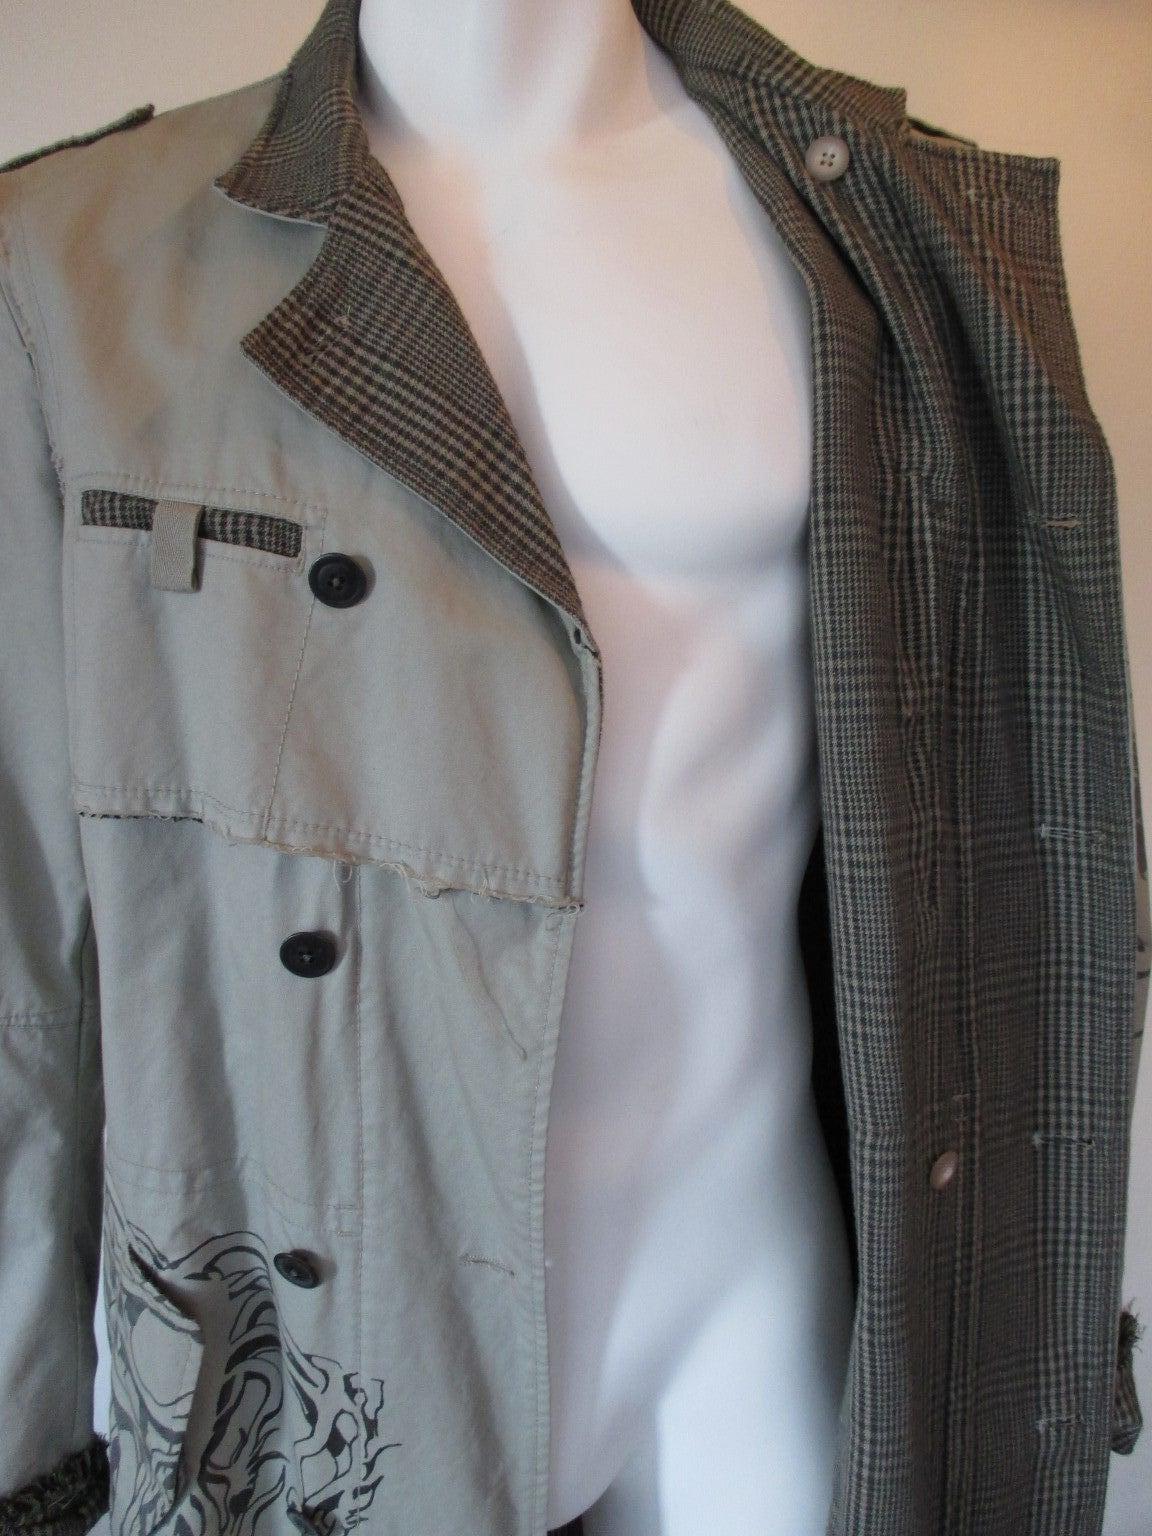 Designermantel von Marithe Francois Girbaud, hergestellt in Frankreich.
Farbe ist grau/grün
MATERIAL ist Baumwolle
Zweireiher
Der Mantel hat ein Futter aus einem Seiden-Wollgemisch mit Prince-of-Wales-Karo.
und hat ein gedrucktes Design.
Bitte